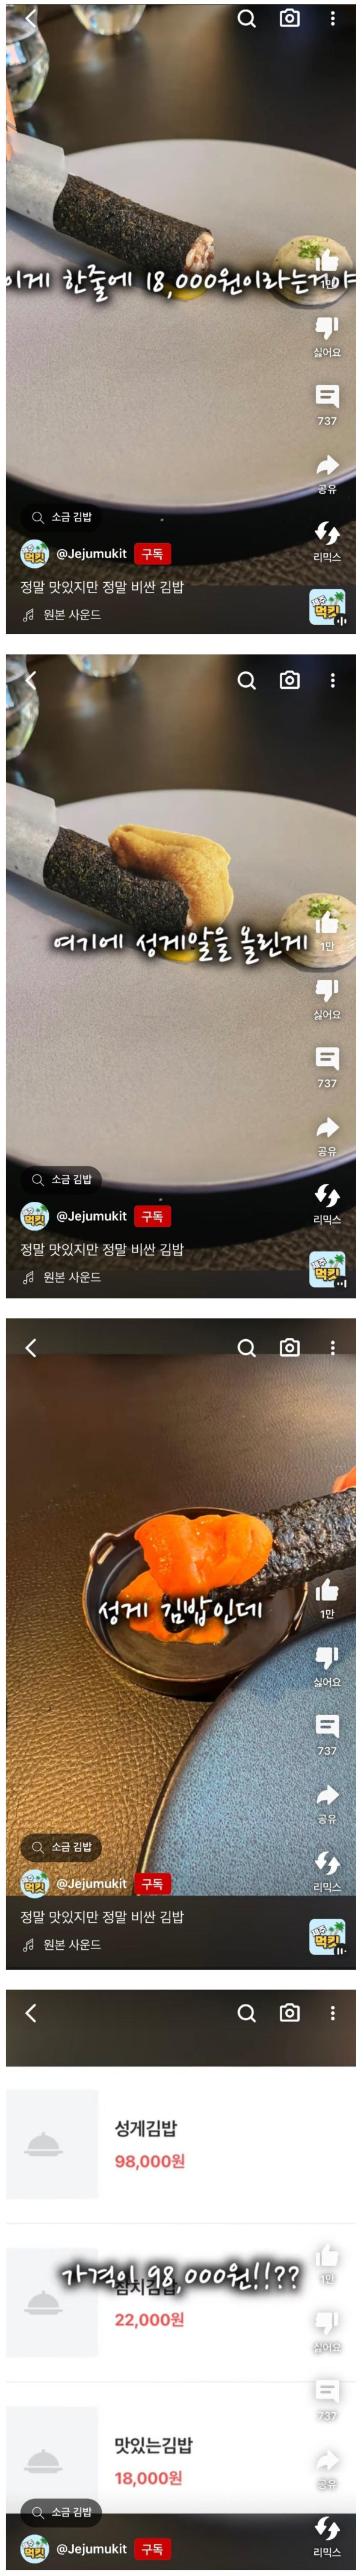 98,000원짜리 김밥